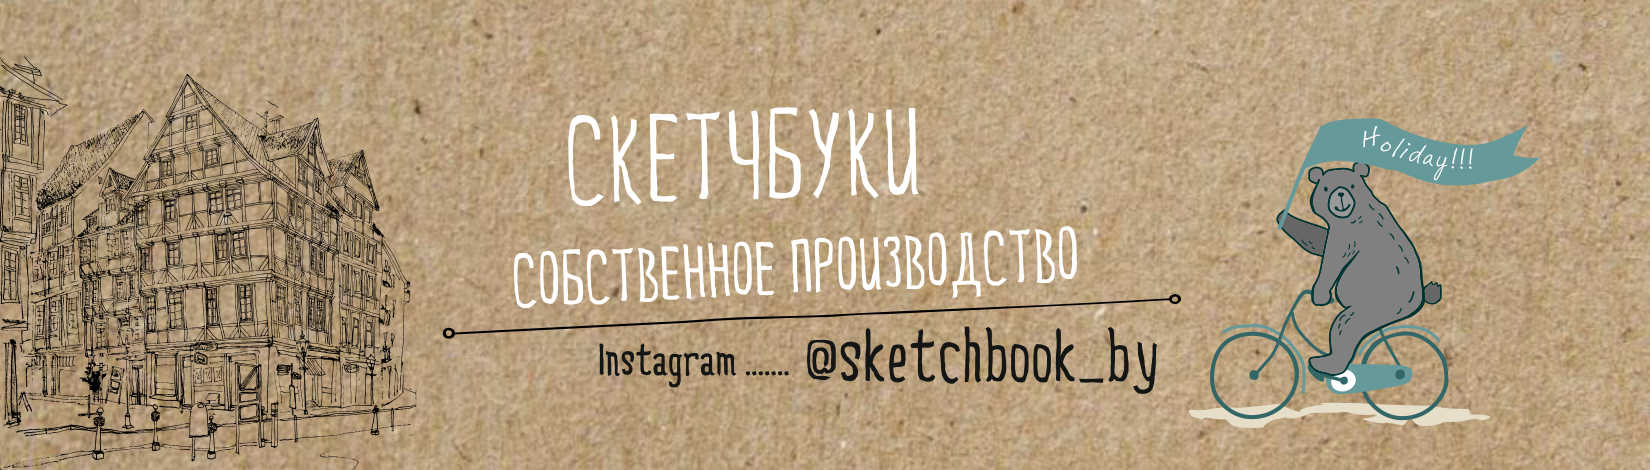 sketchbook_by